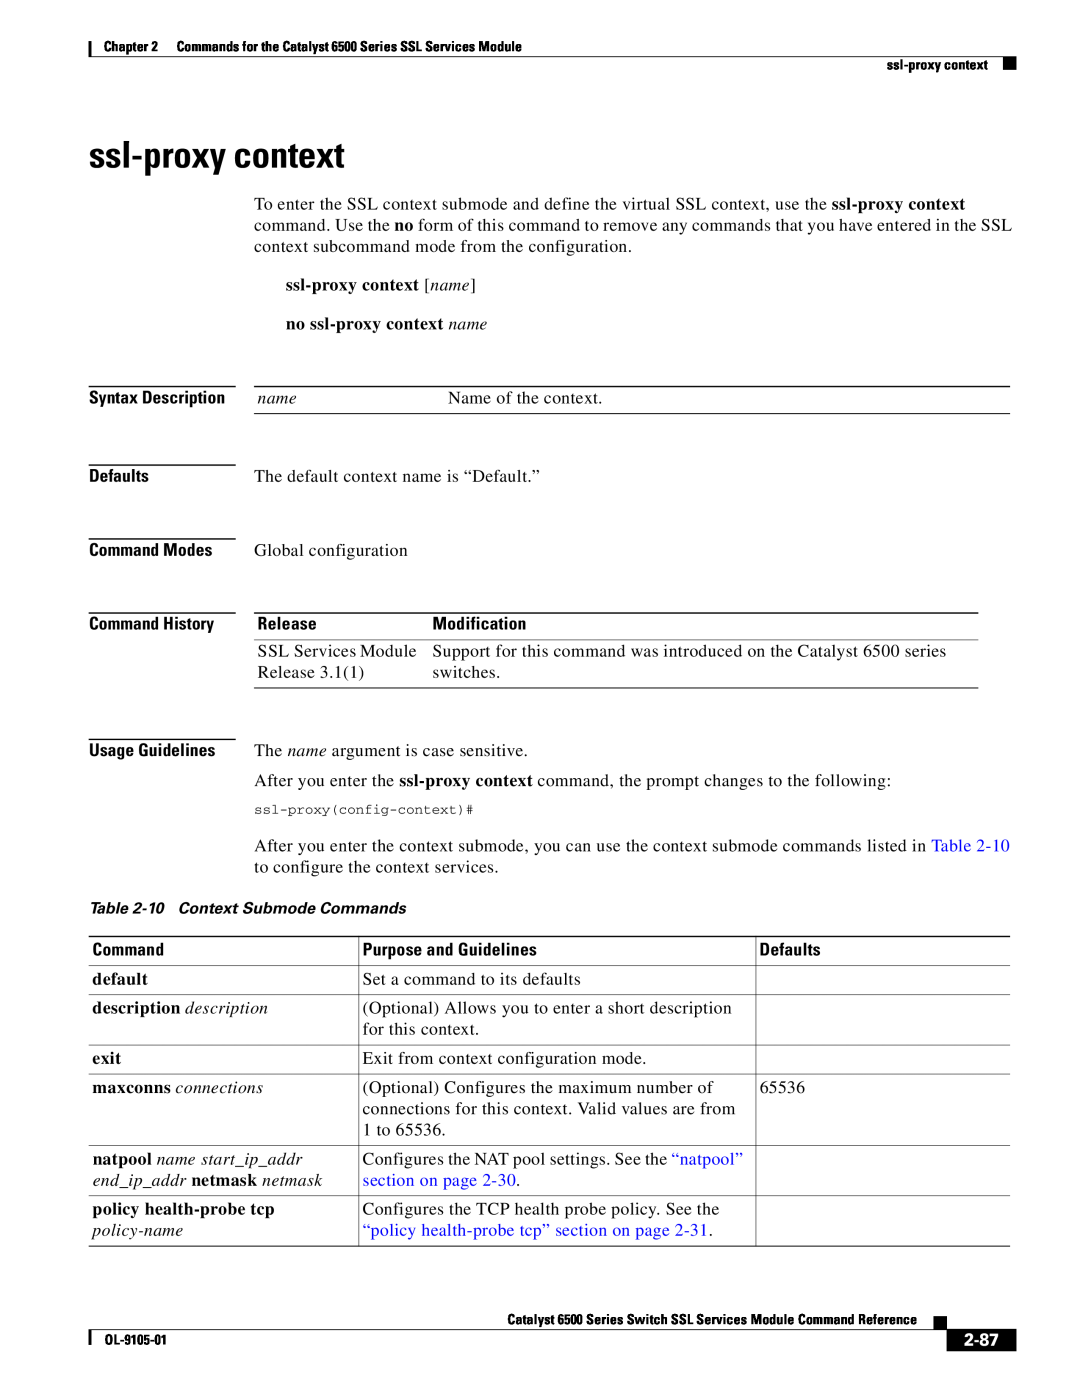 Cisco Systems 6500 ssl-proxy context name no ssl-proxy context name, Purpose and Guidelines, description description 